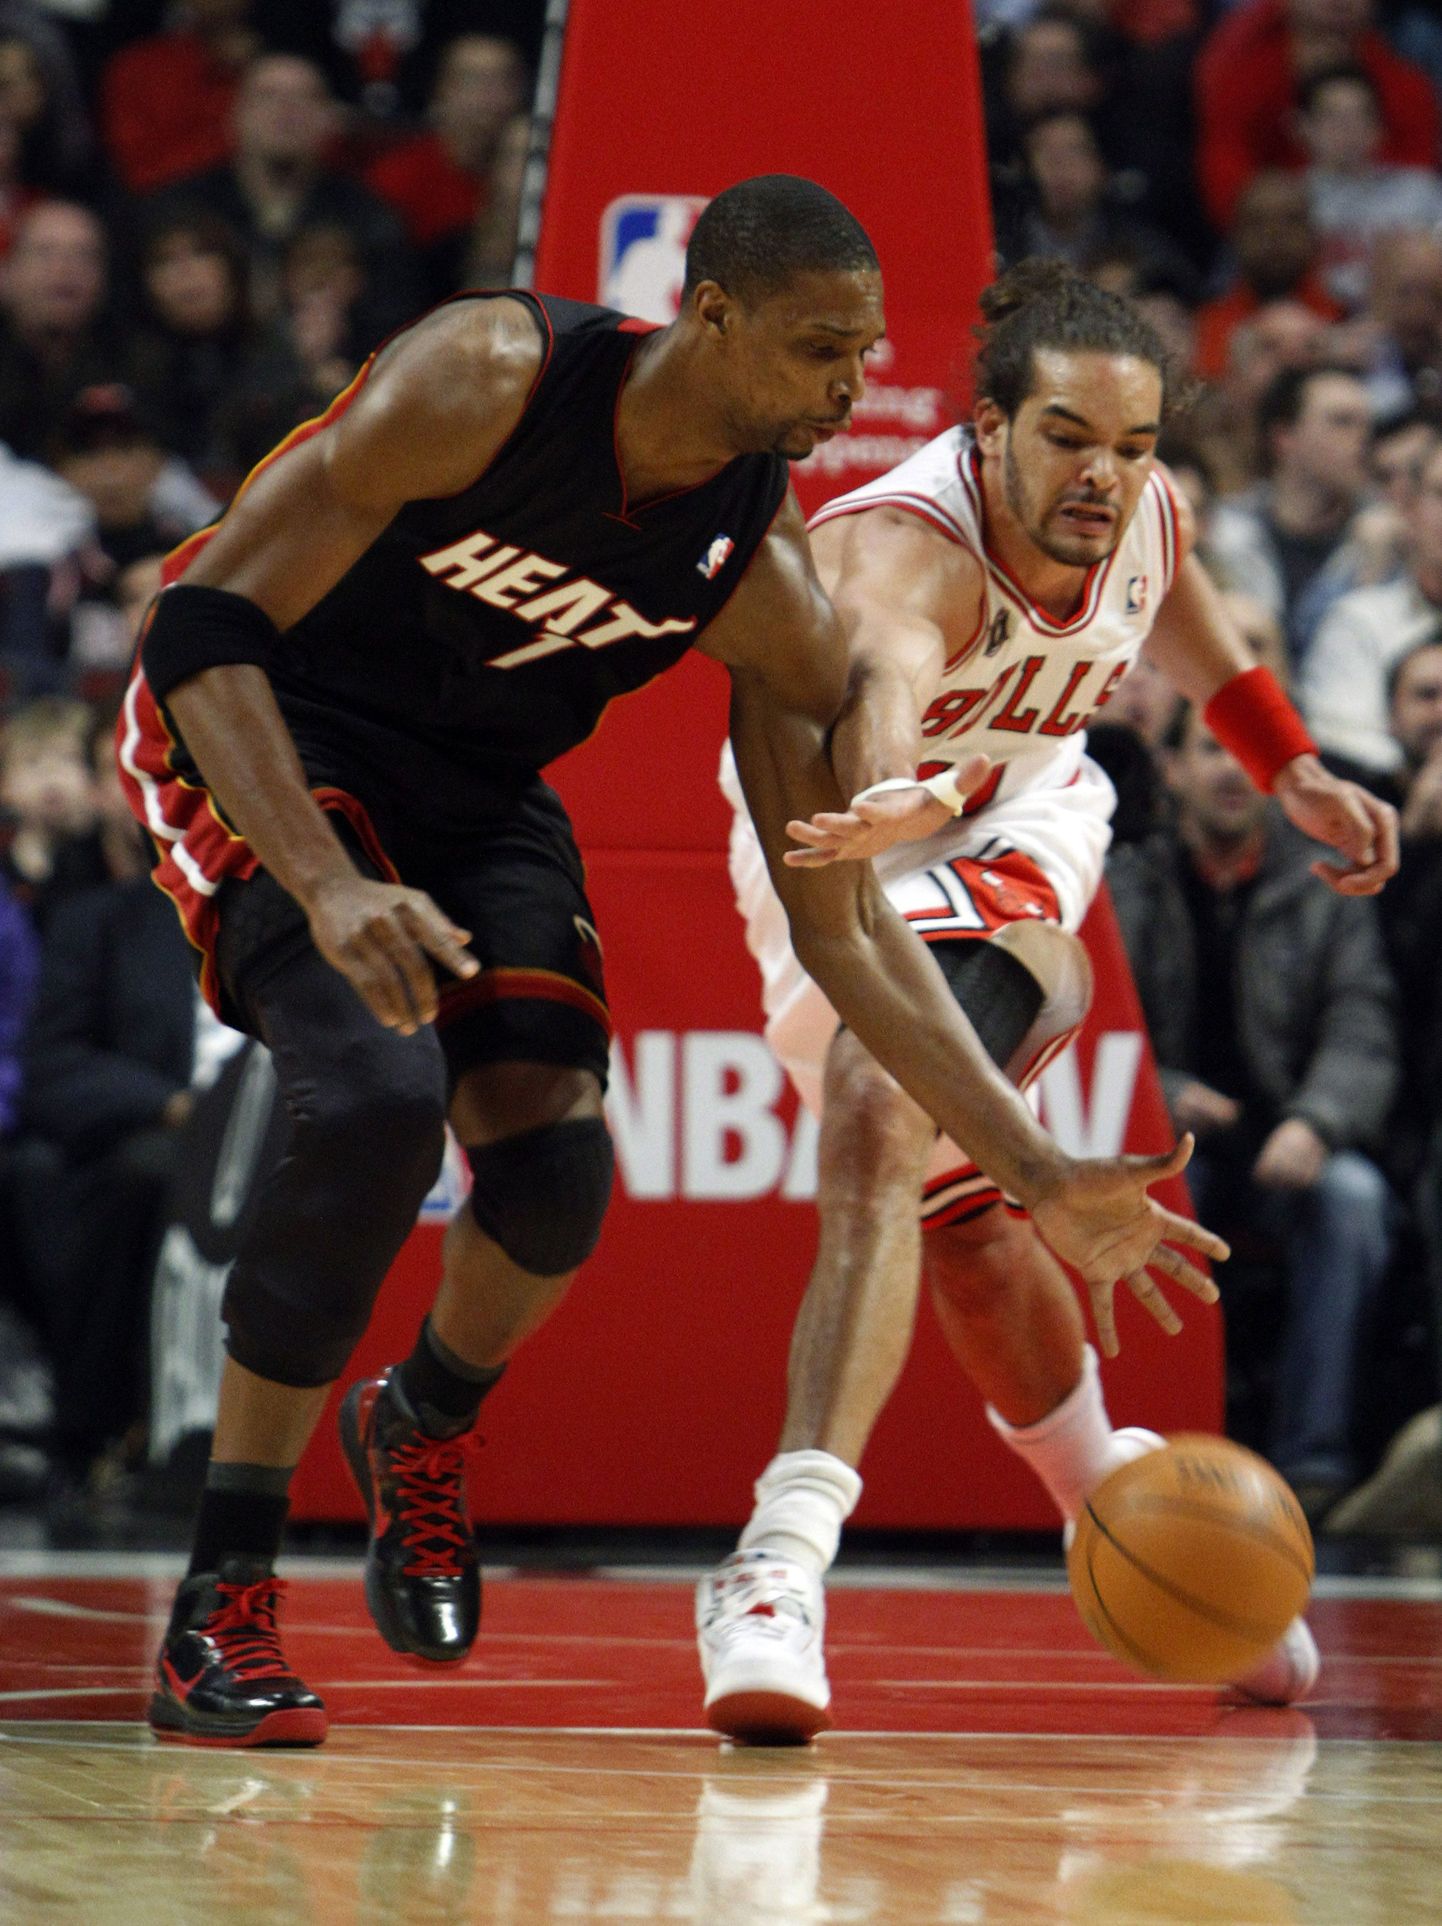 Chris Bosh (vasakul) heitlemas Chicago Bullsi mängija Joakim Noah'ga.